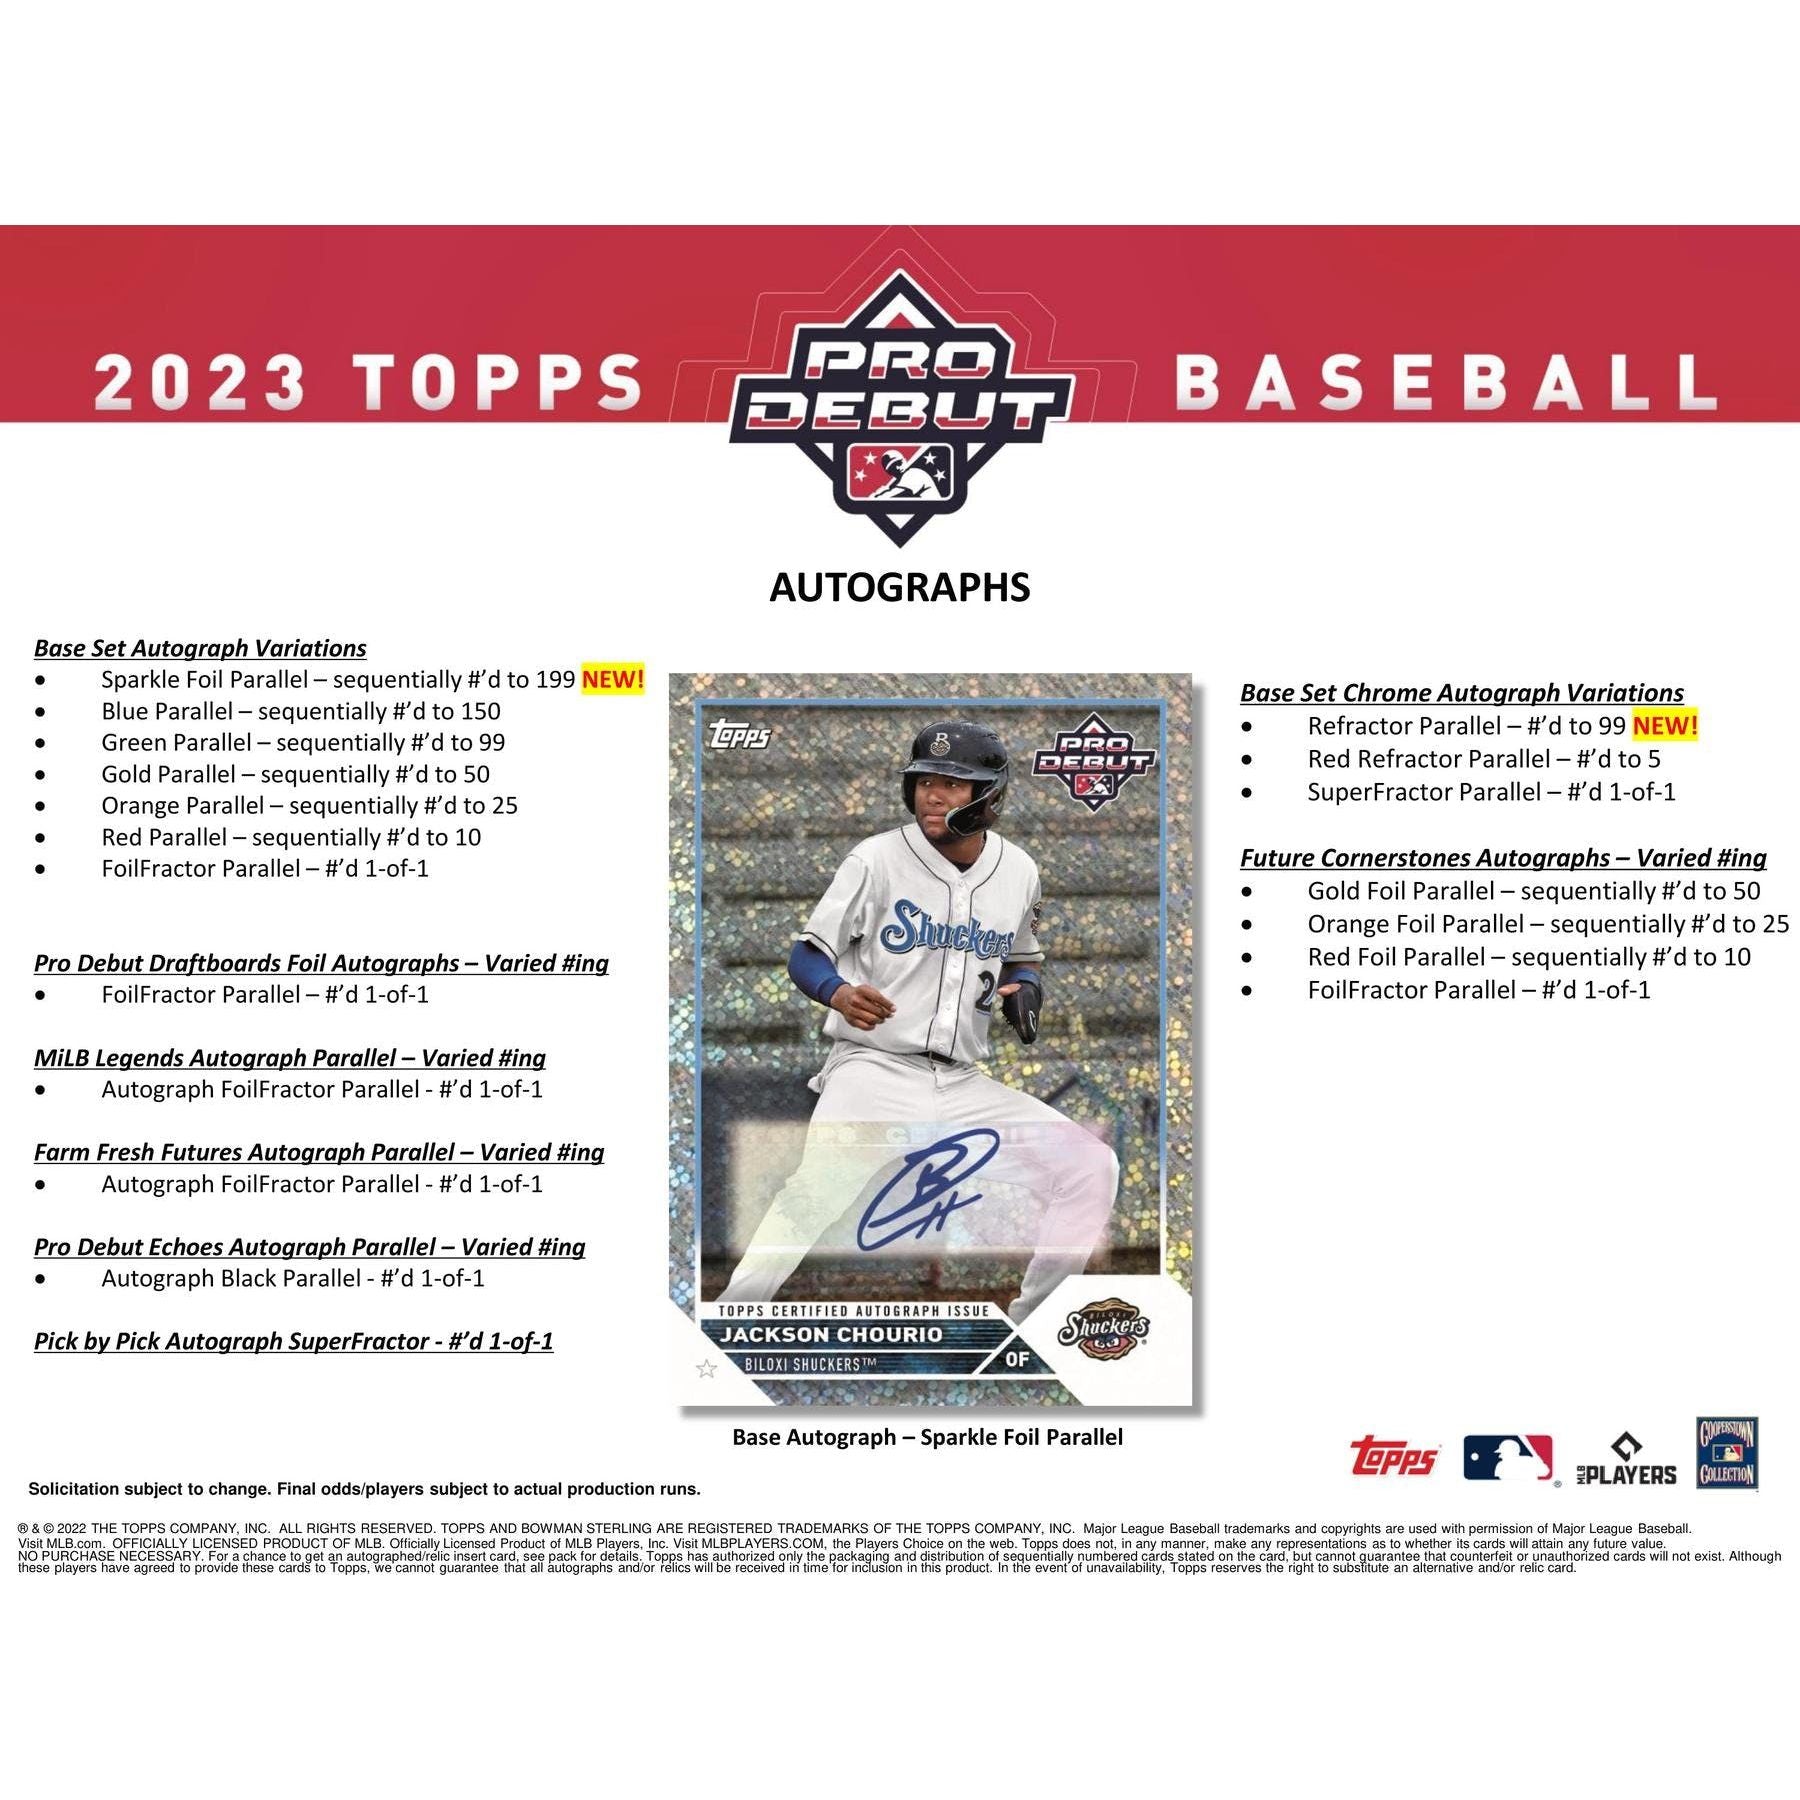 2023 Topps Pro Debut Baseball Hobby Box - King Card Canada